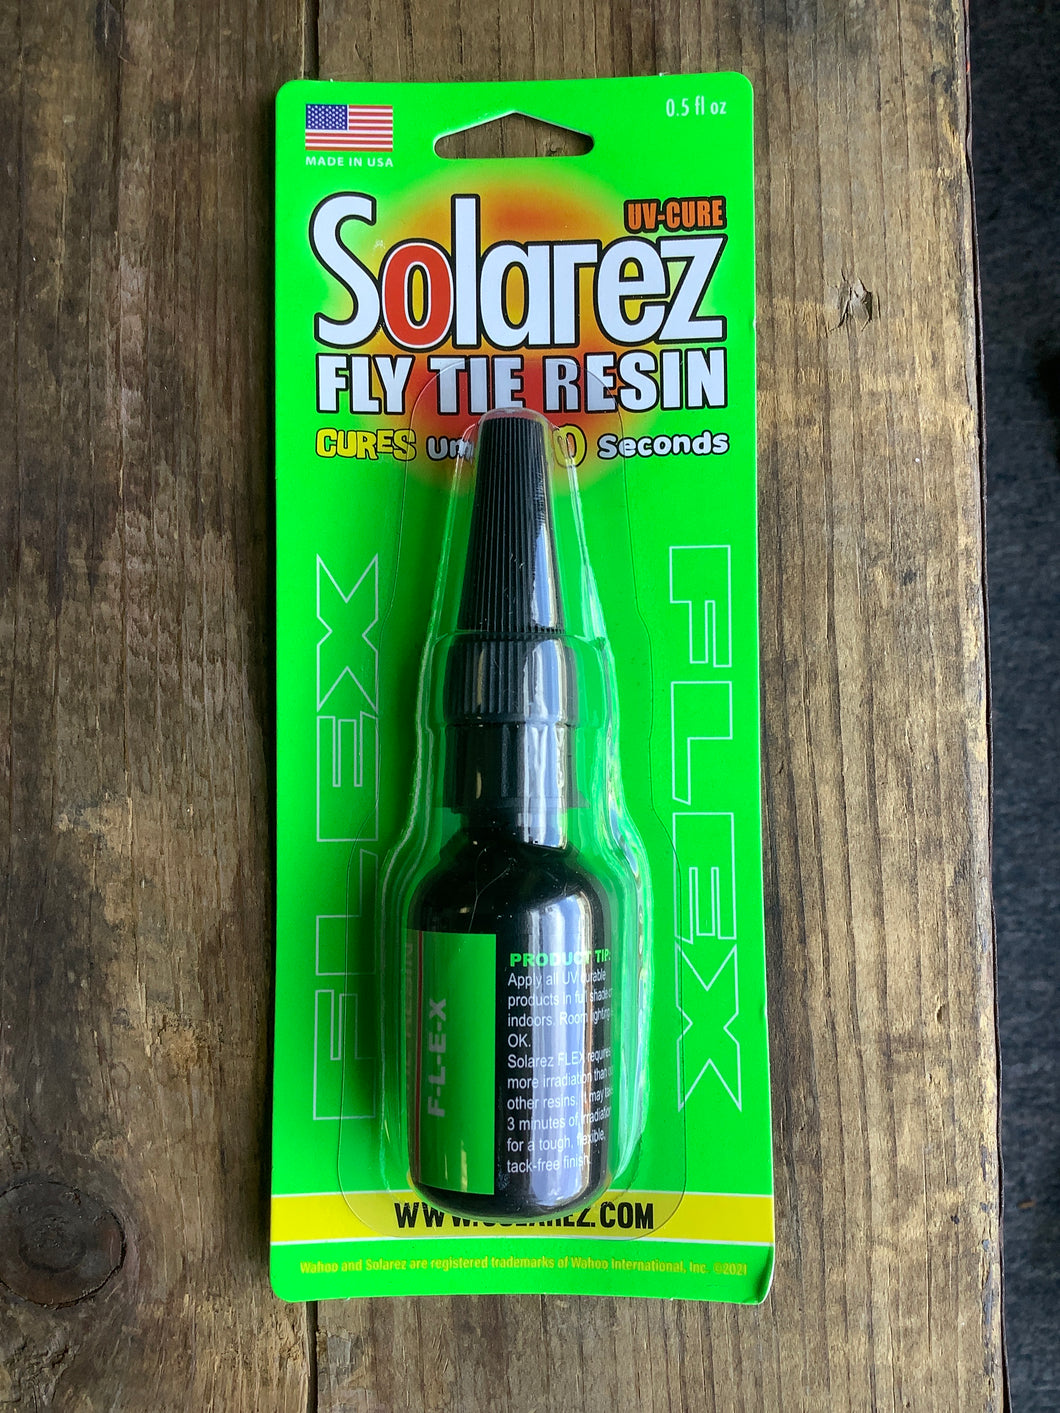 Solarez Flex Formula Fly Tying Resin